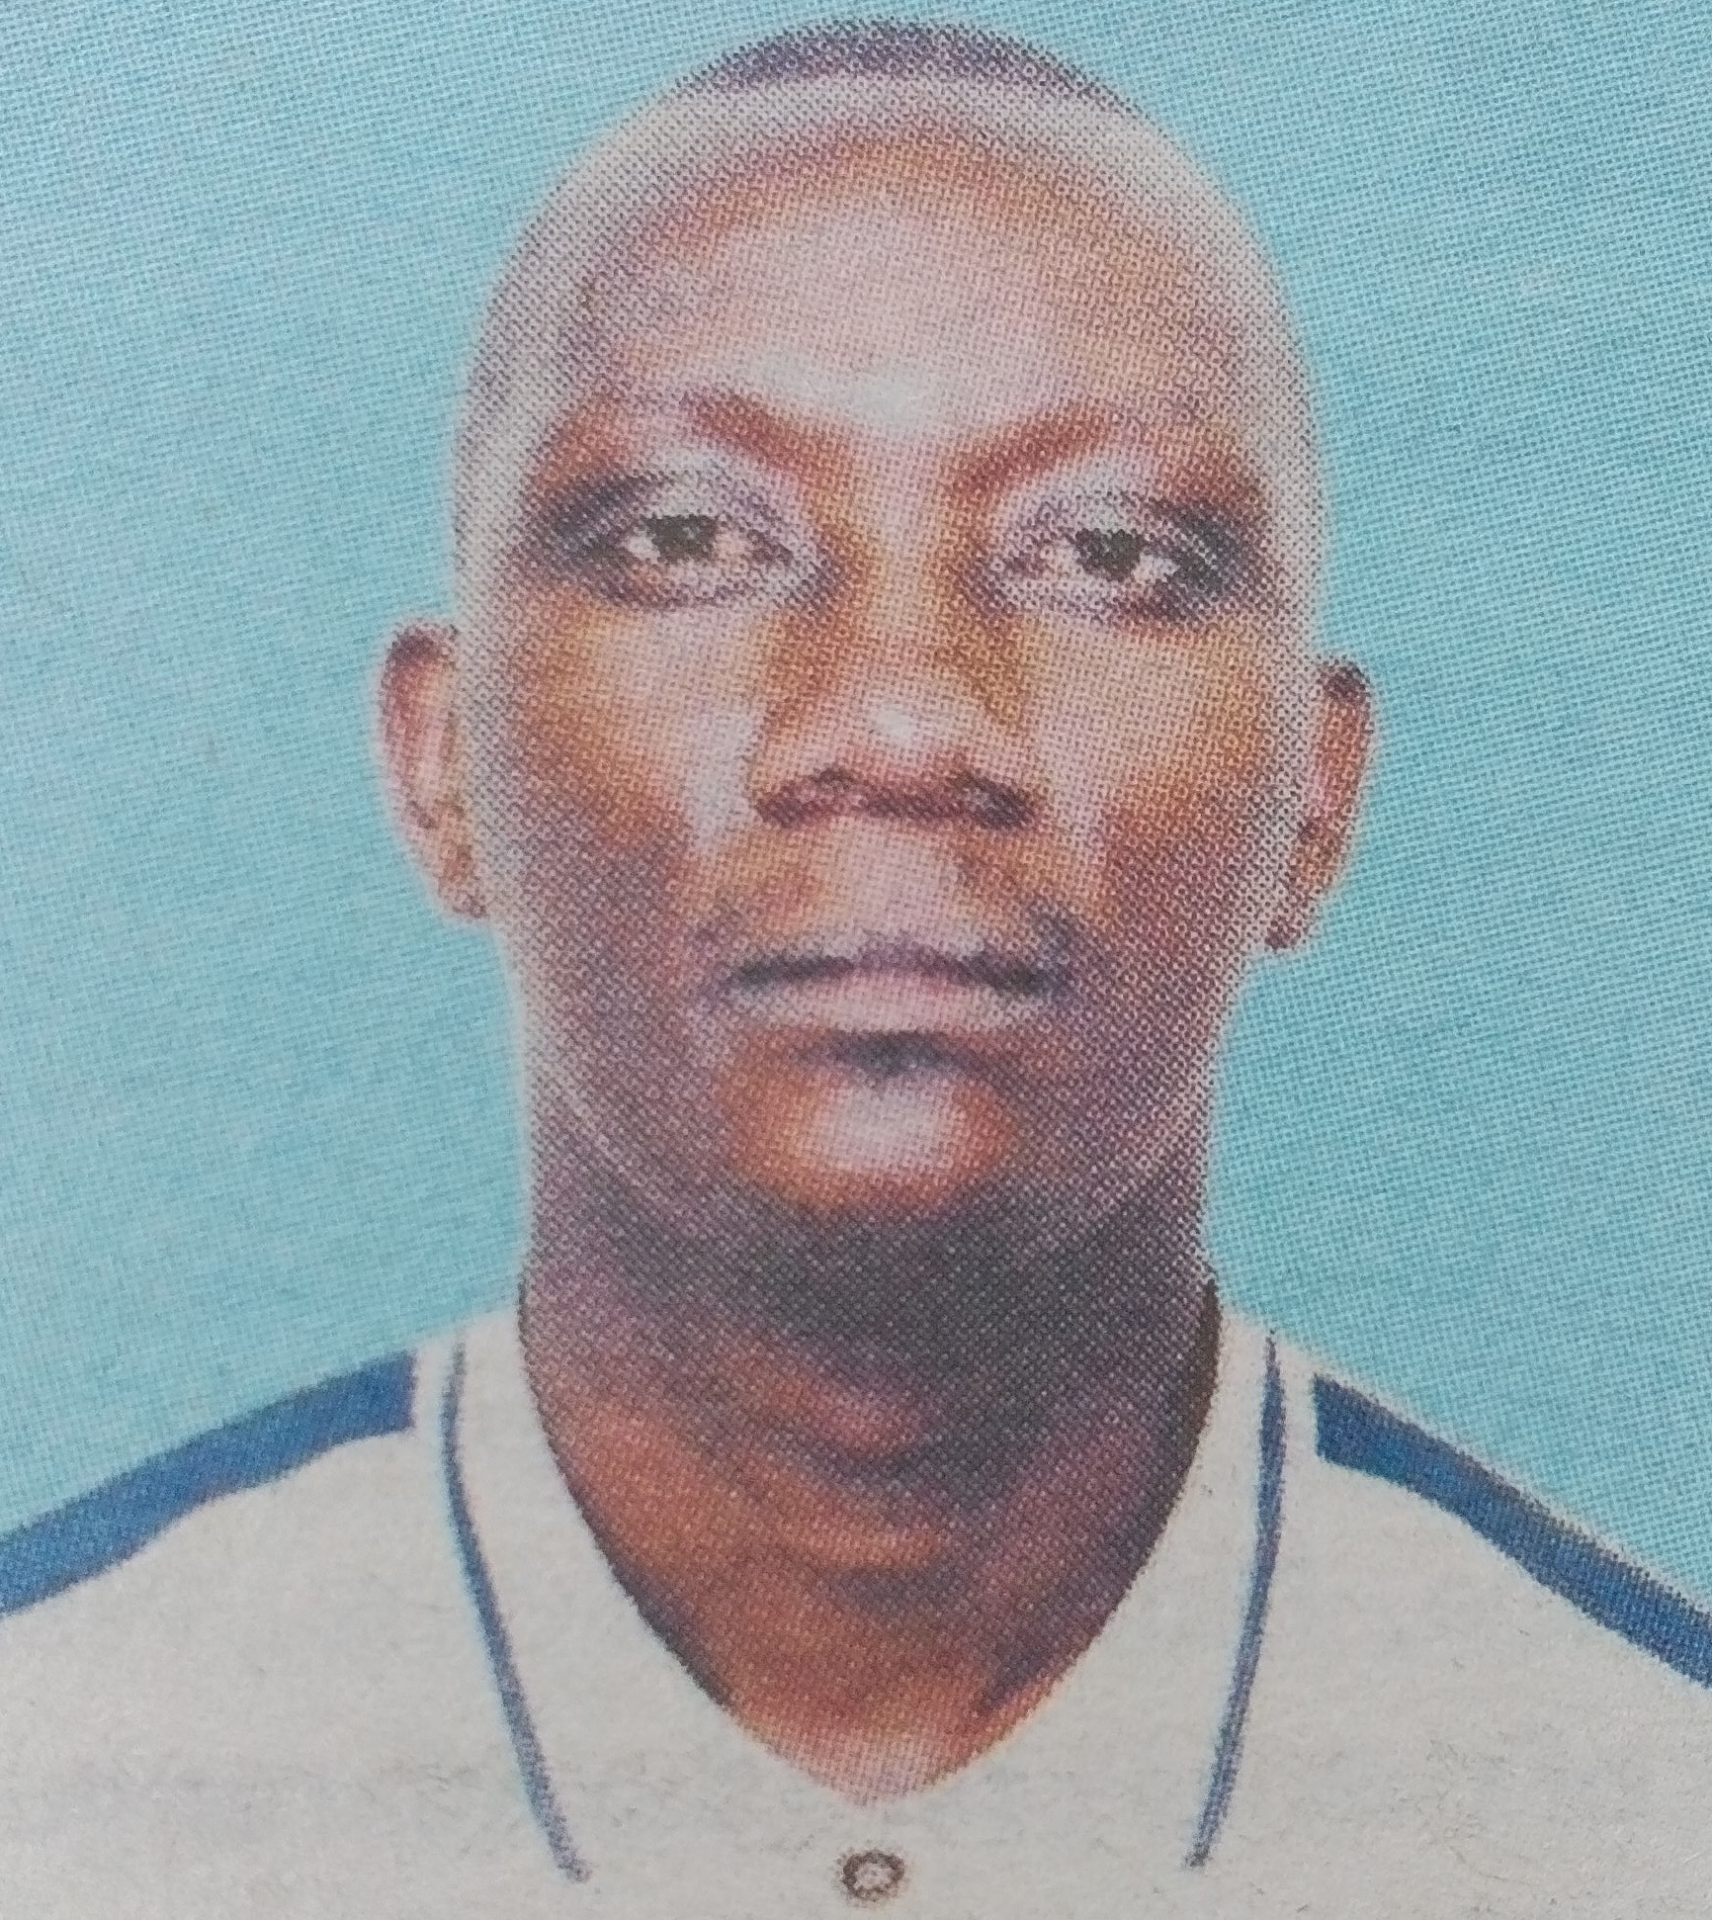 Obituary Image of Martin Githua Mutembei